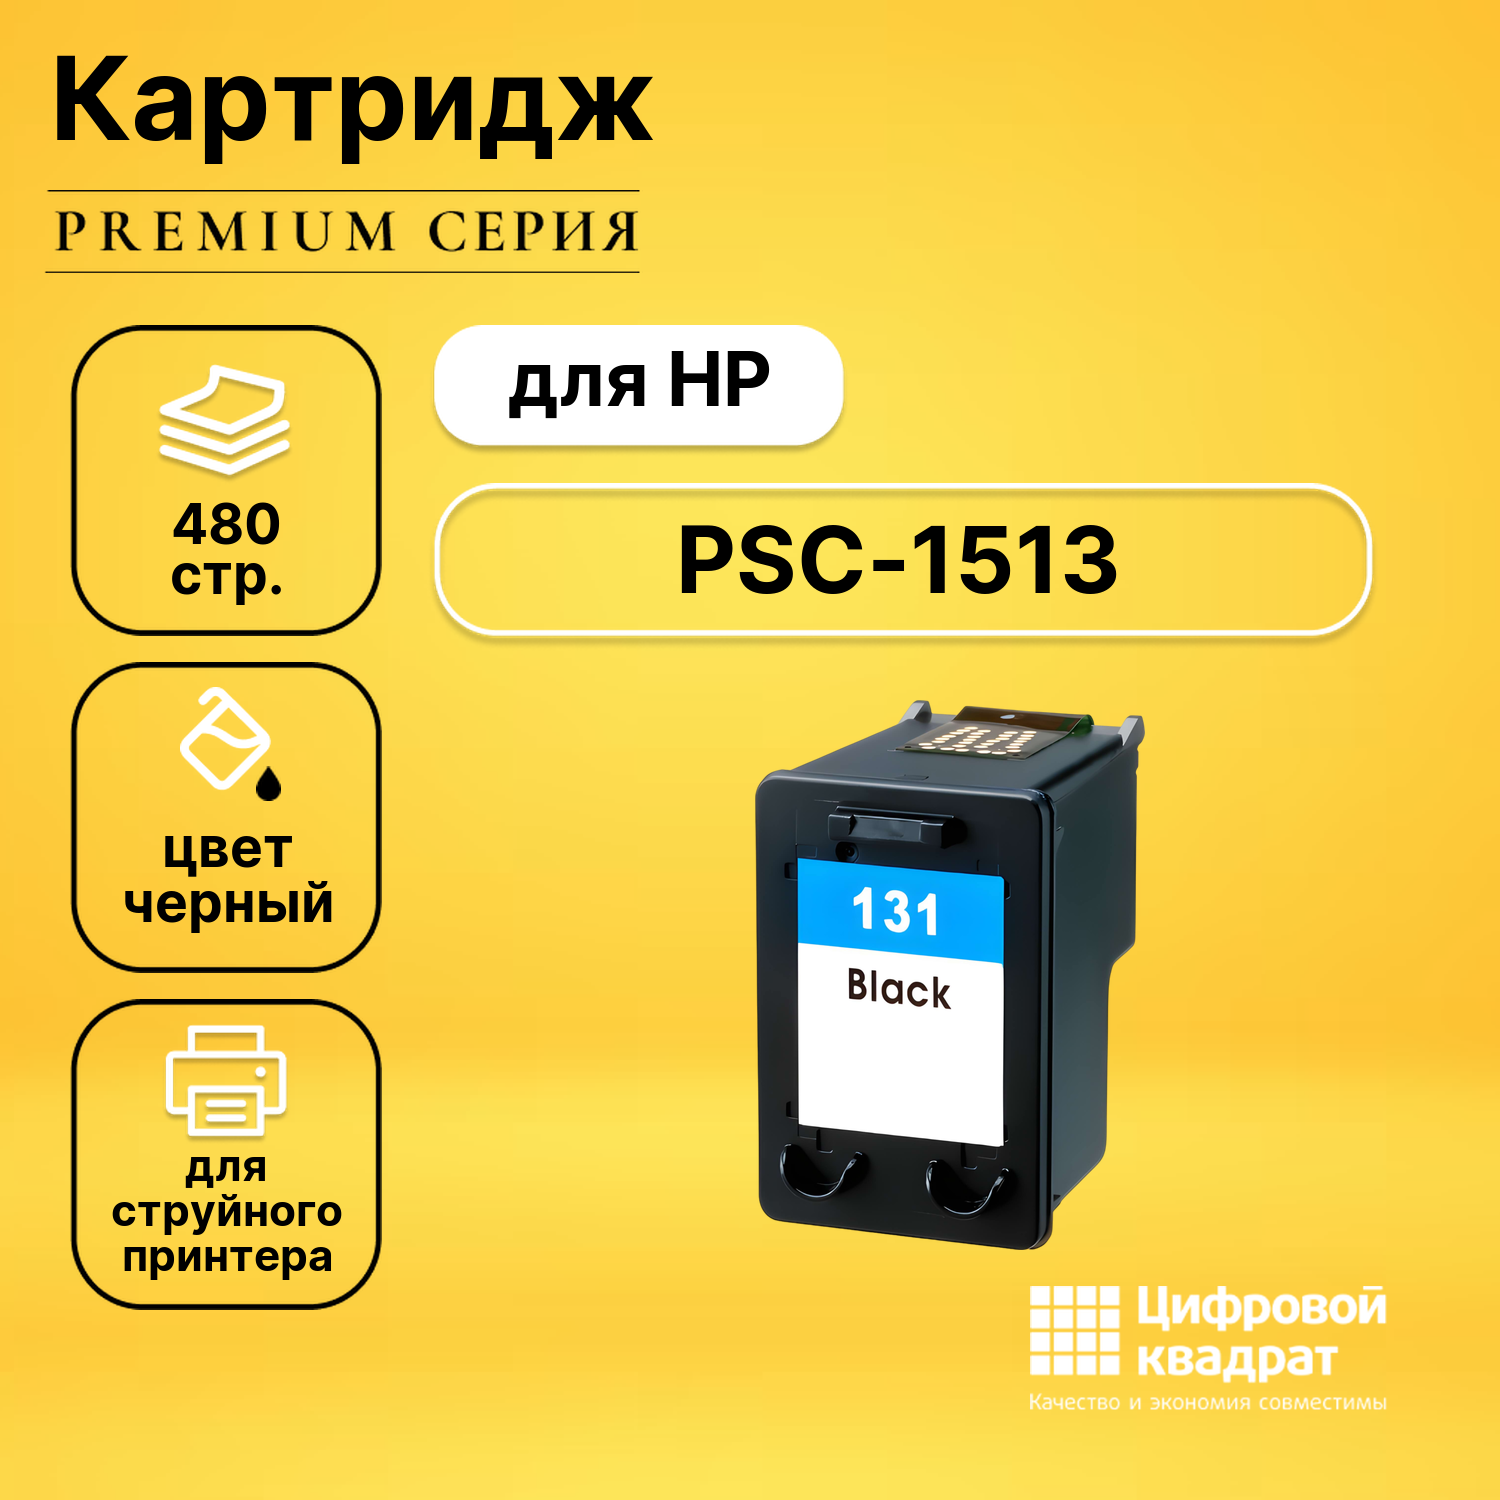 Картридж DS для HP PSC-1513